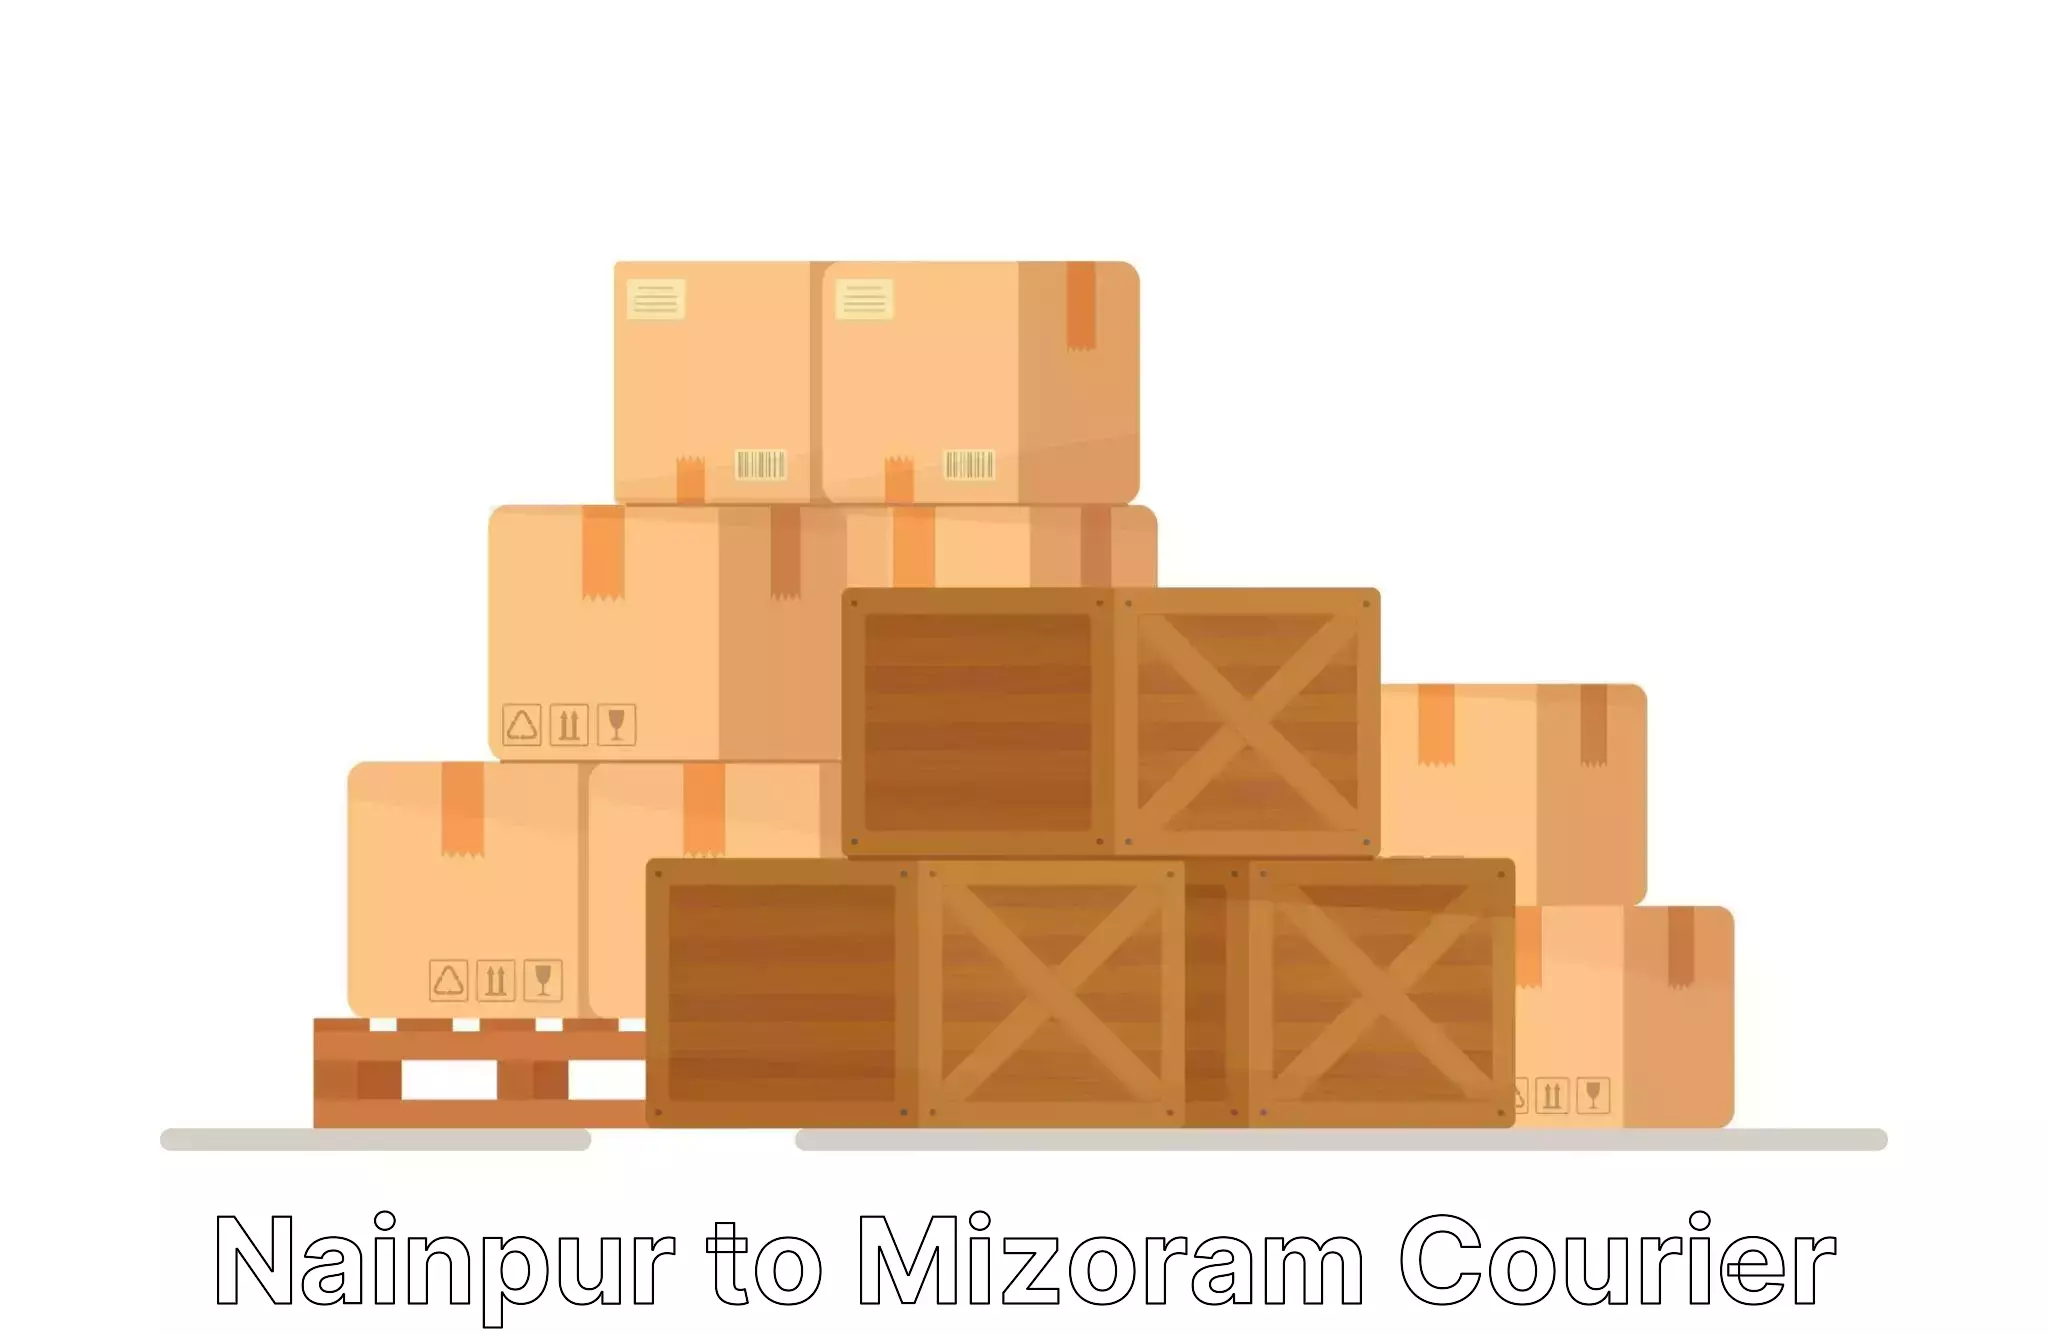 Expert moving and storage Nainpur to Mizoram